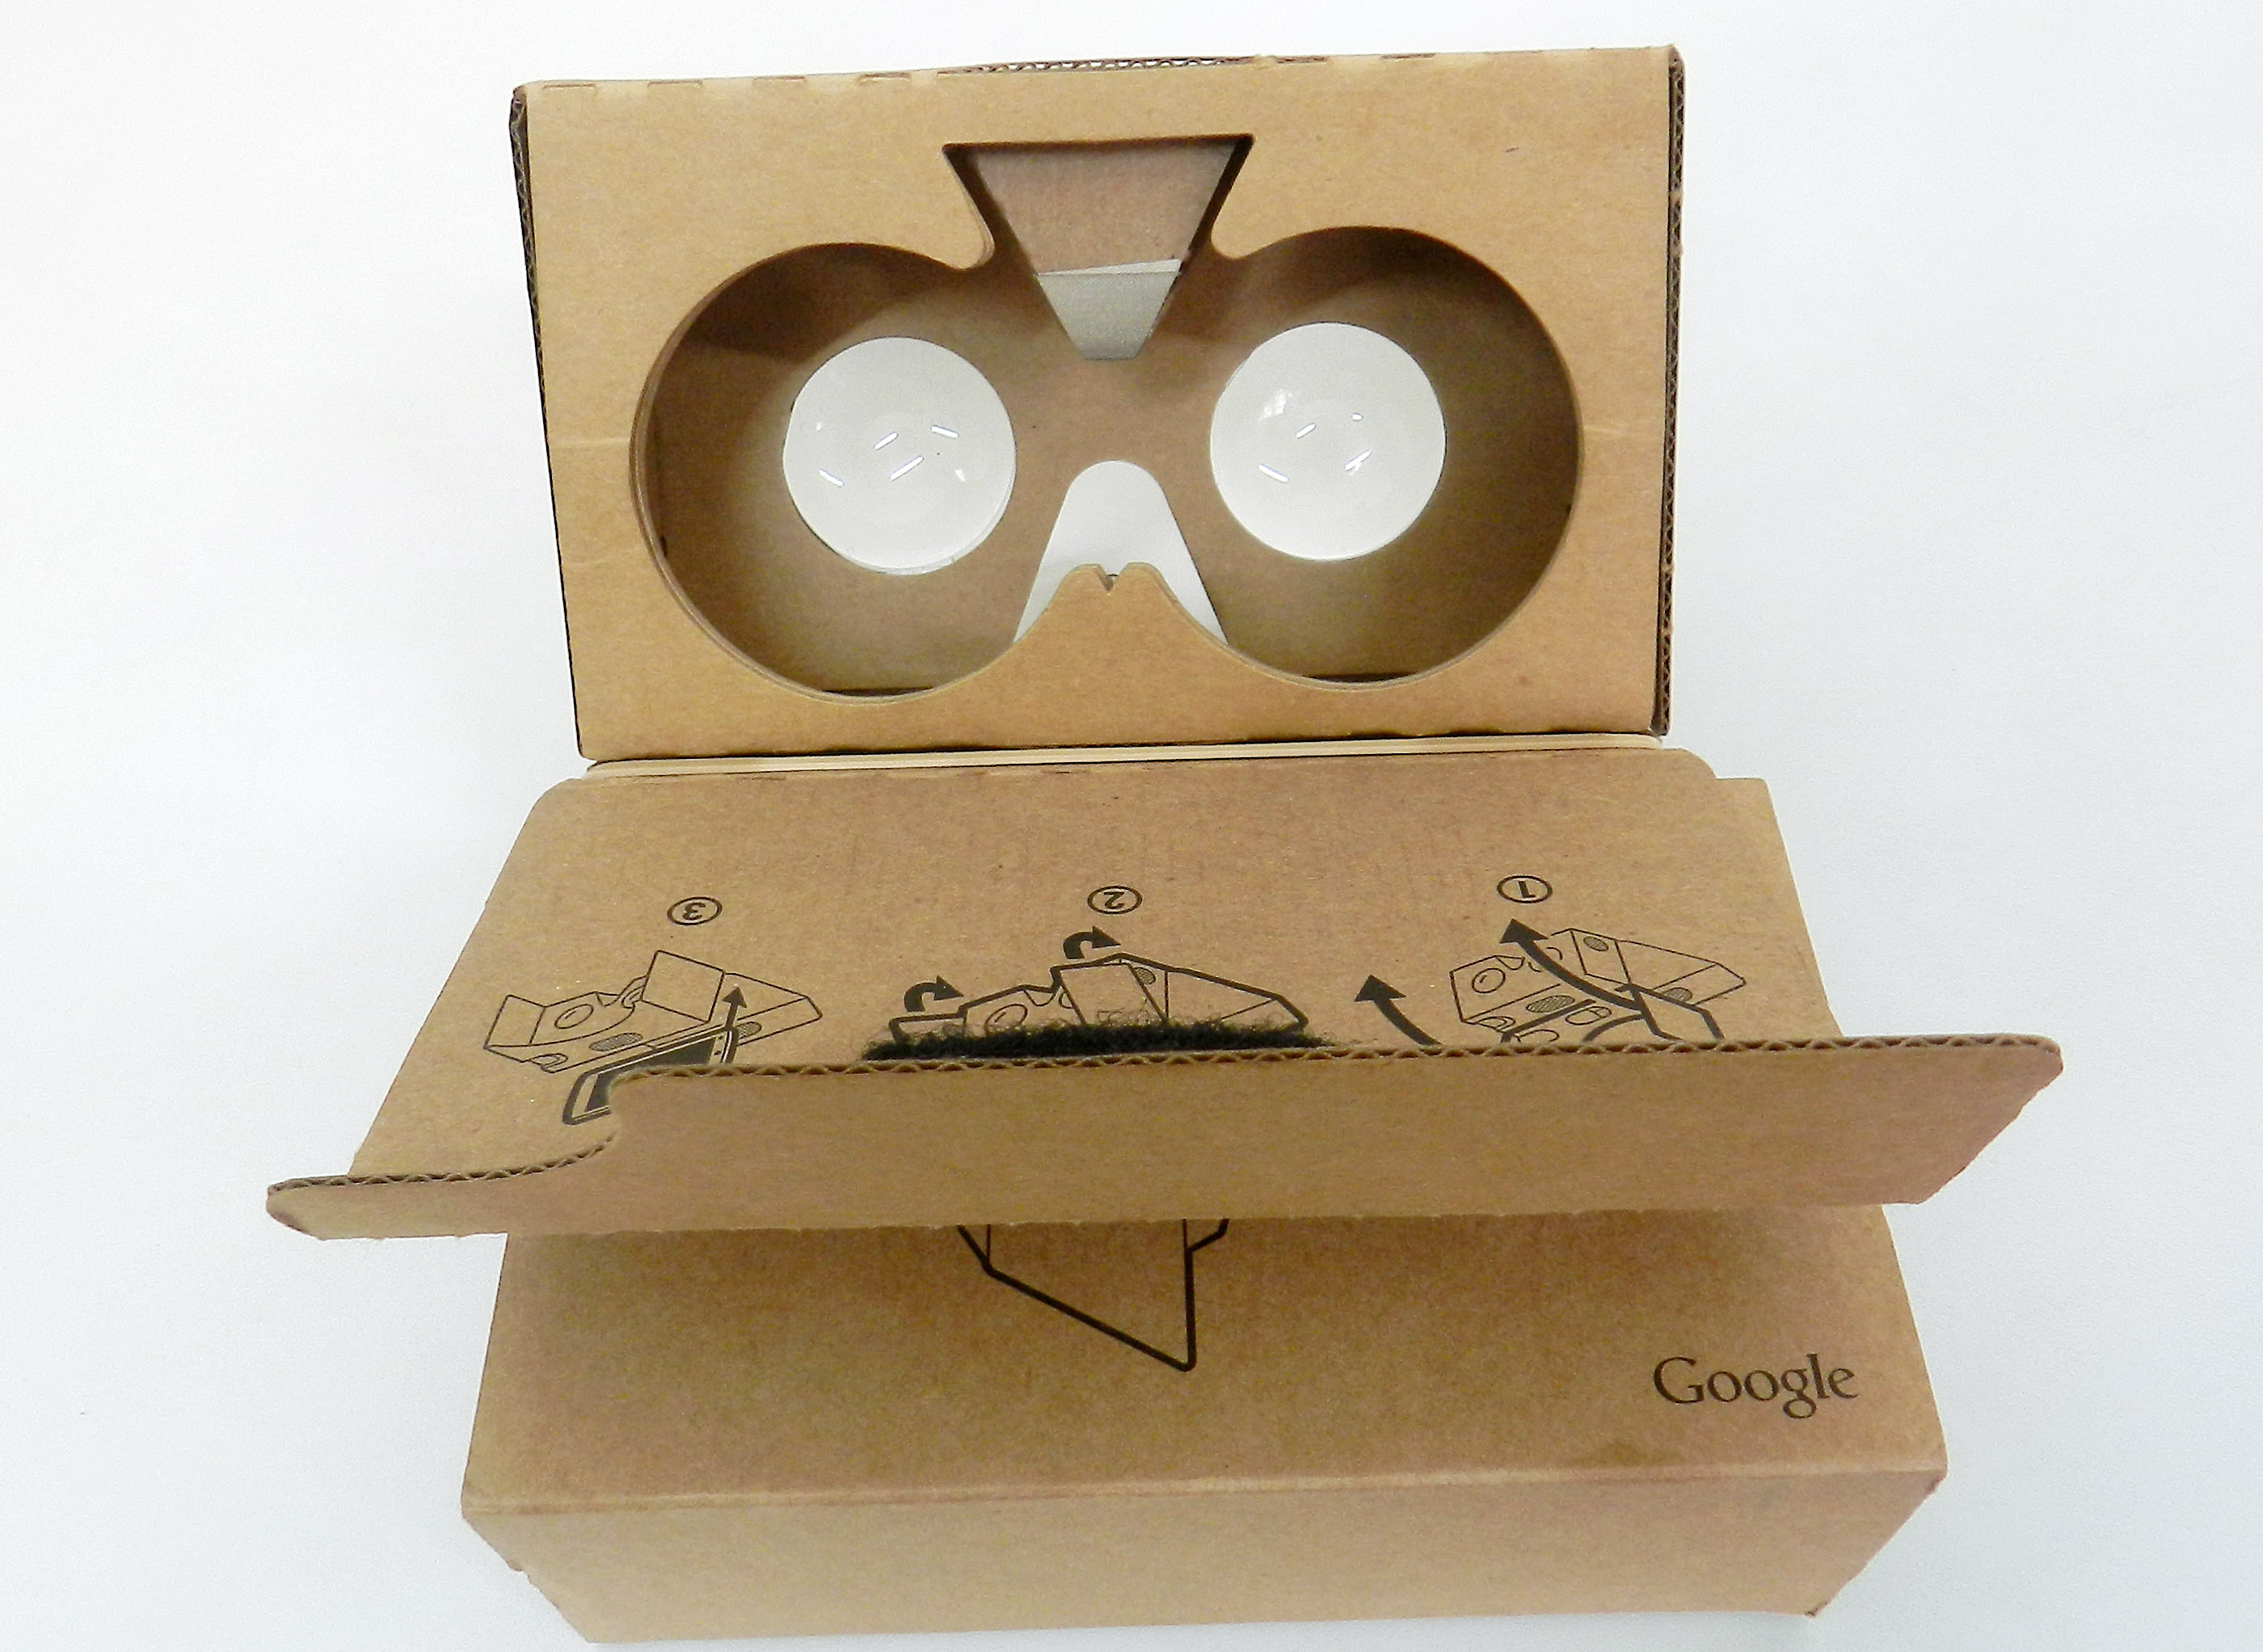 Ya tenemos el Cardboard Google v2 y lo probamos